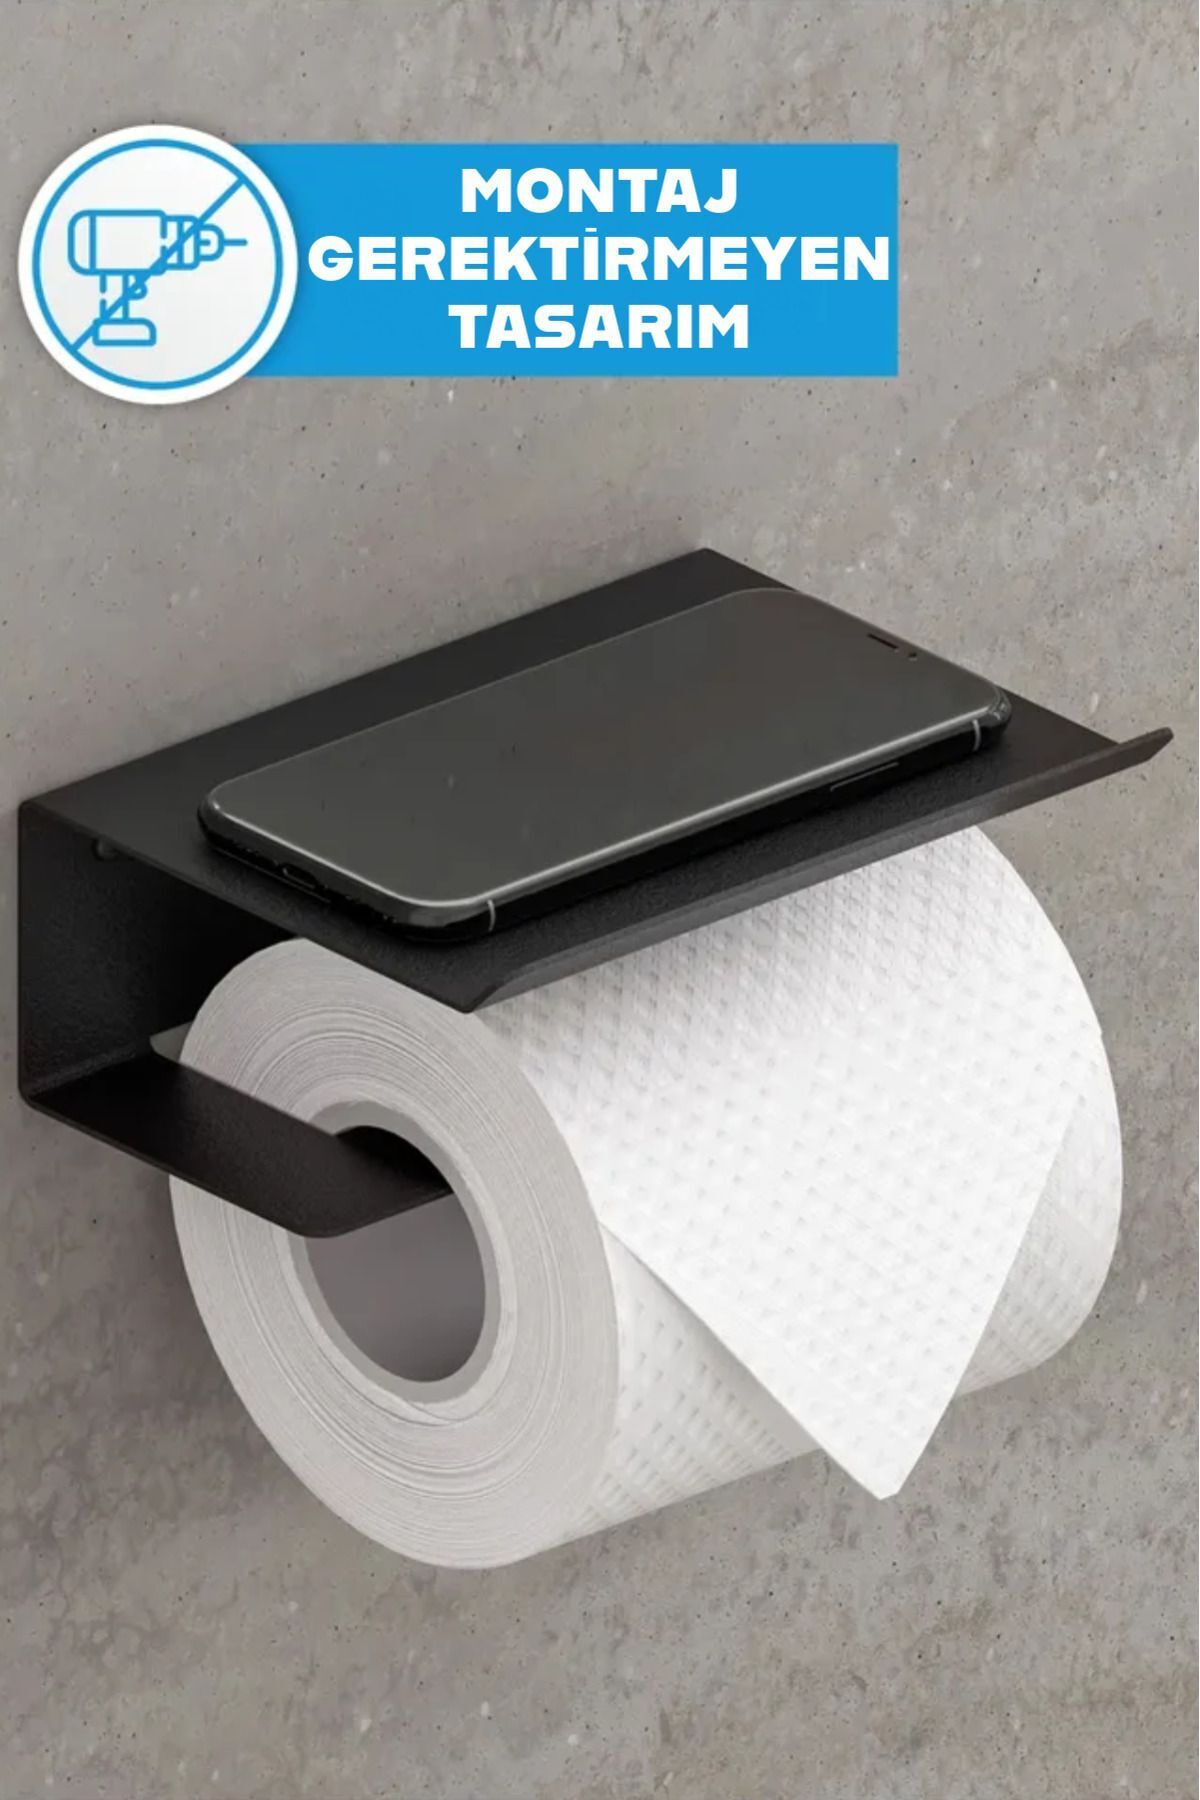 3art Metal Yapışkanlı Tuvalet Kağıtlığı - Dekoratif Banyo Askısı Peçetelik